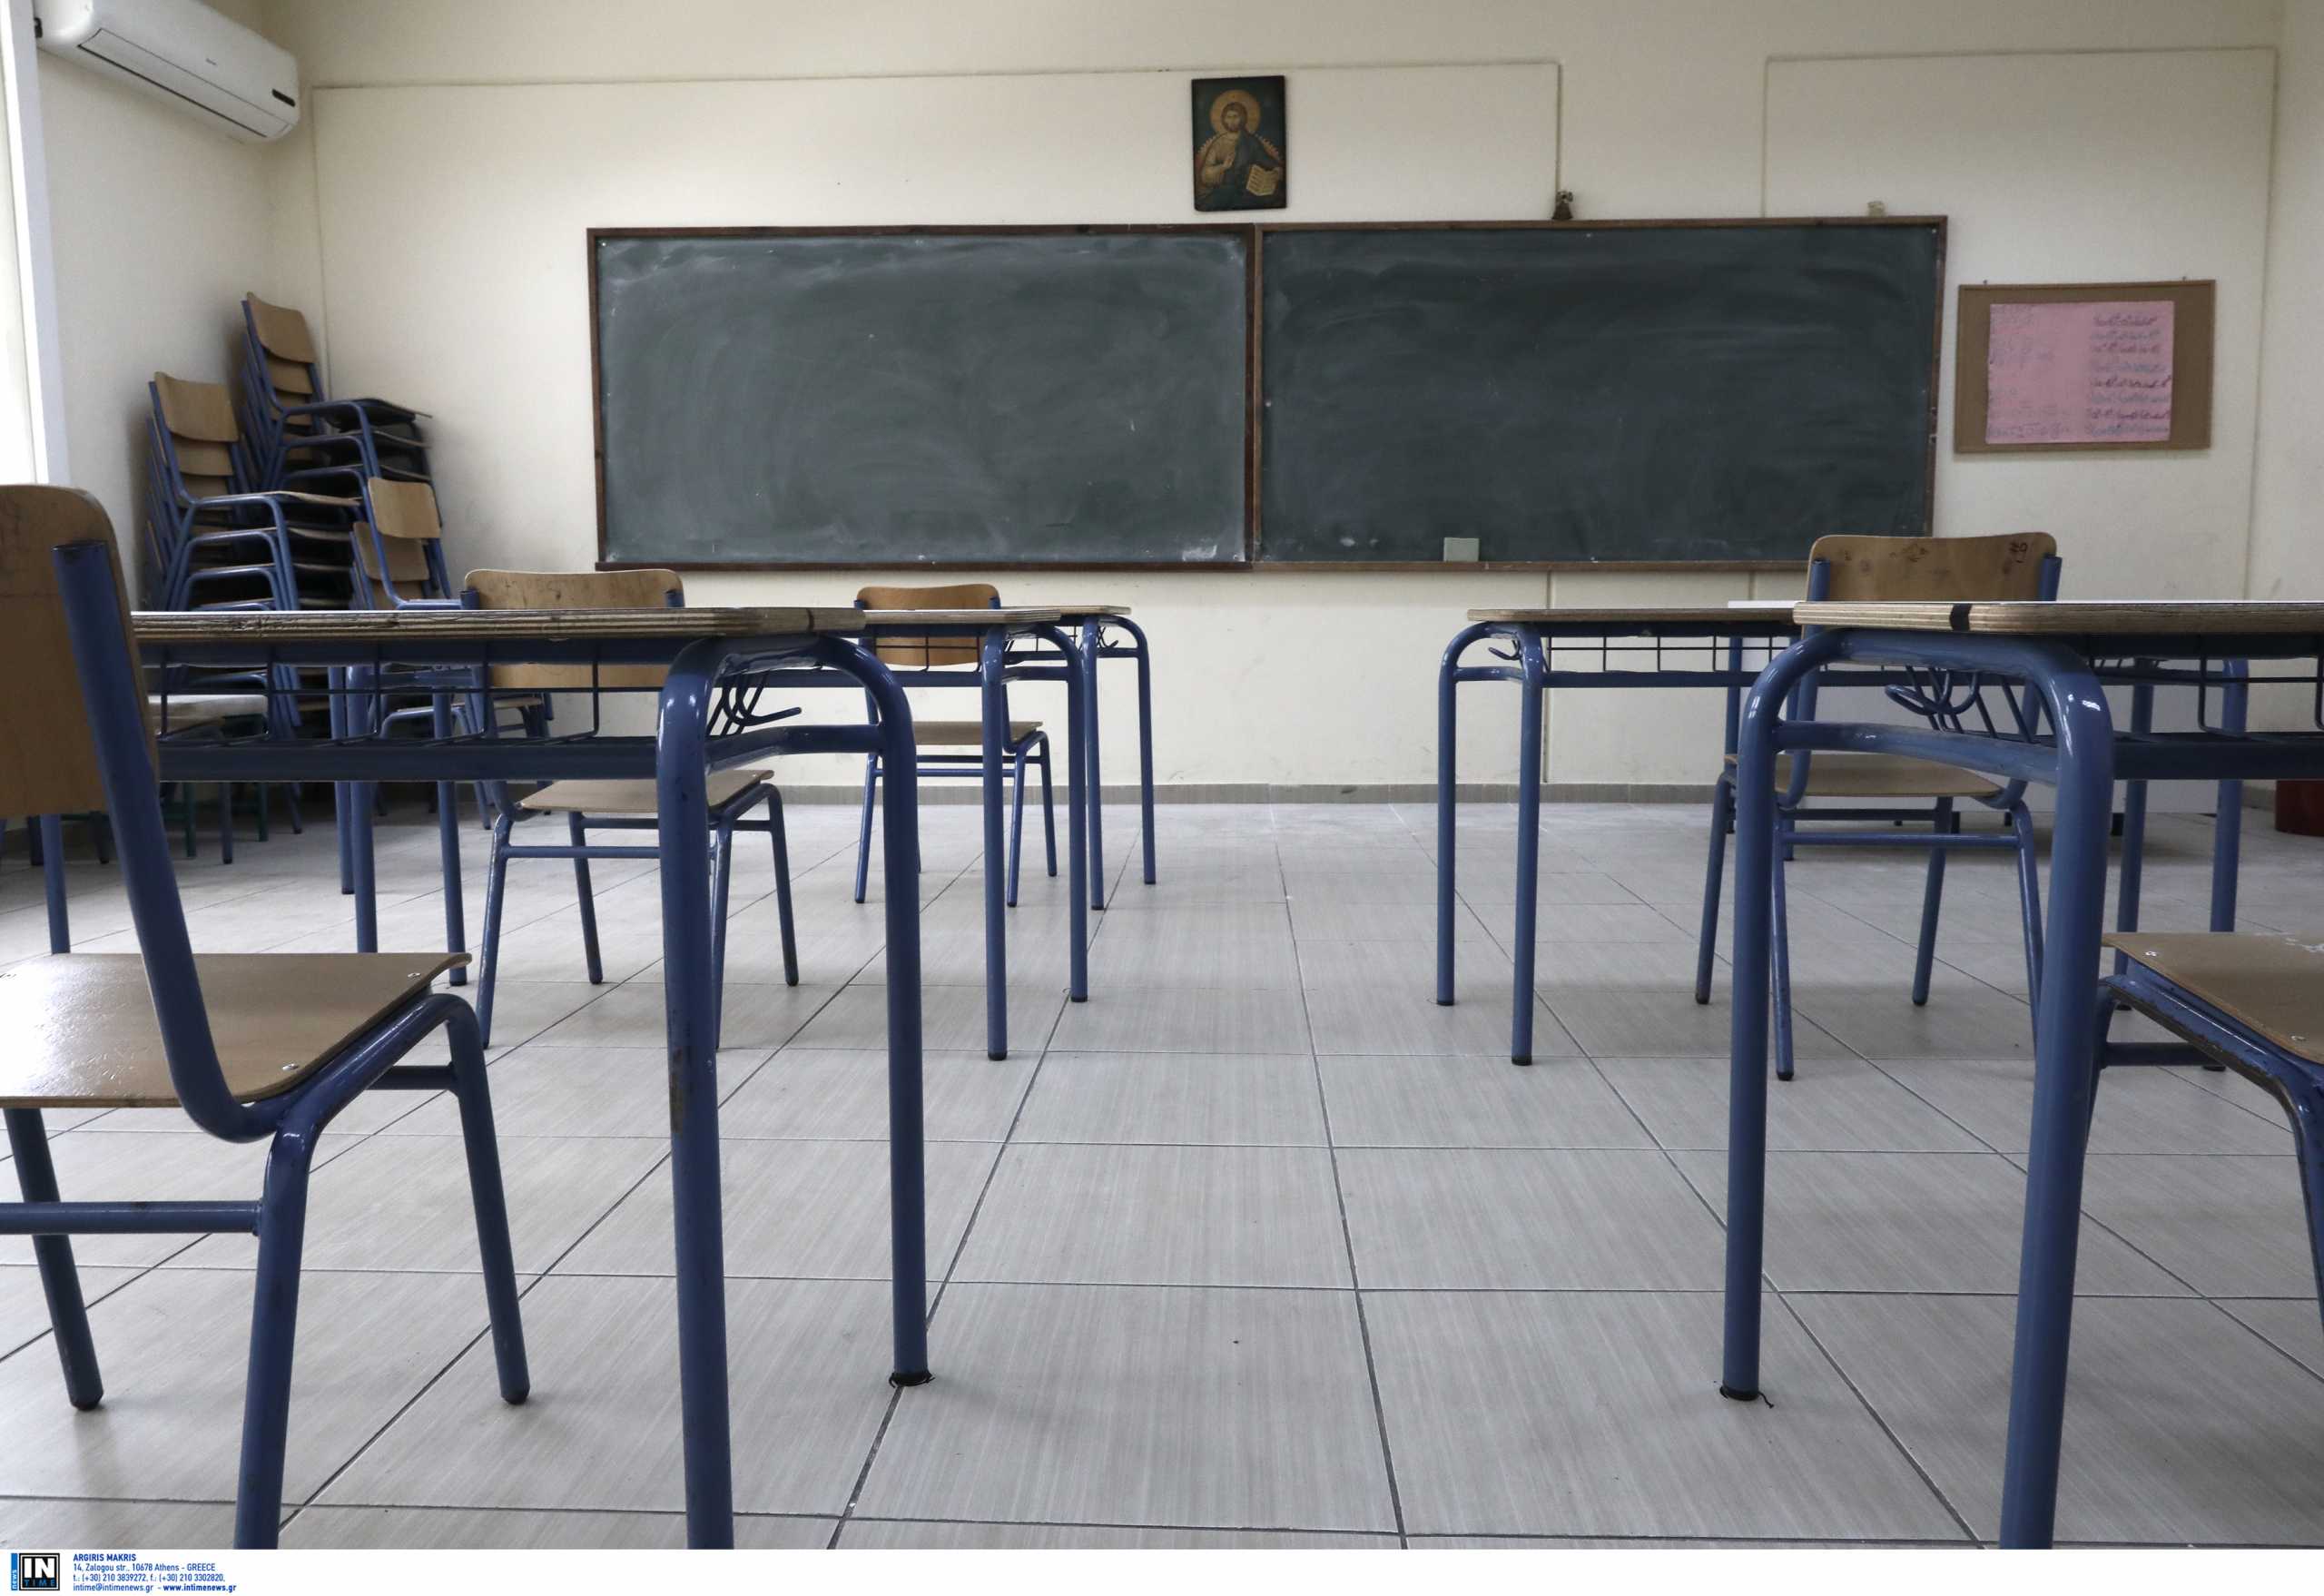 Ηράκλειο: Έργα συντήρησης σε σχολεία στις διακοπές του Πάσχα – Το πρόγραμμα για τις επόμενες μέρες